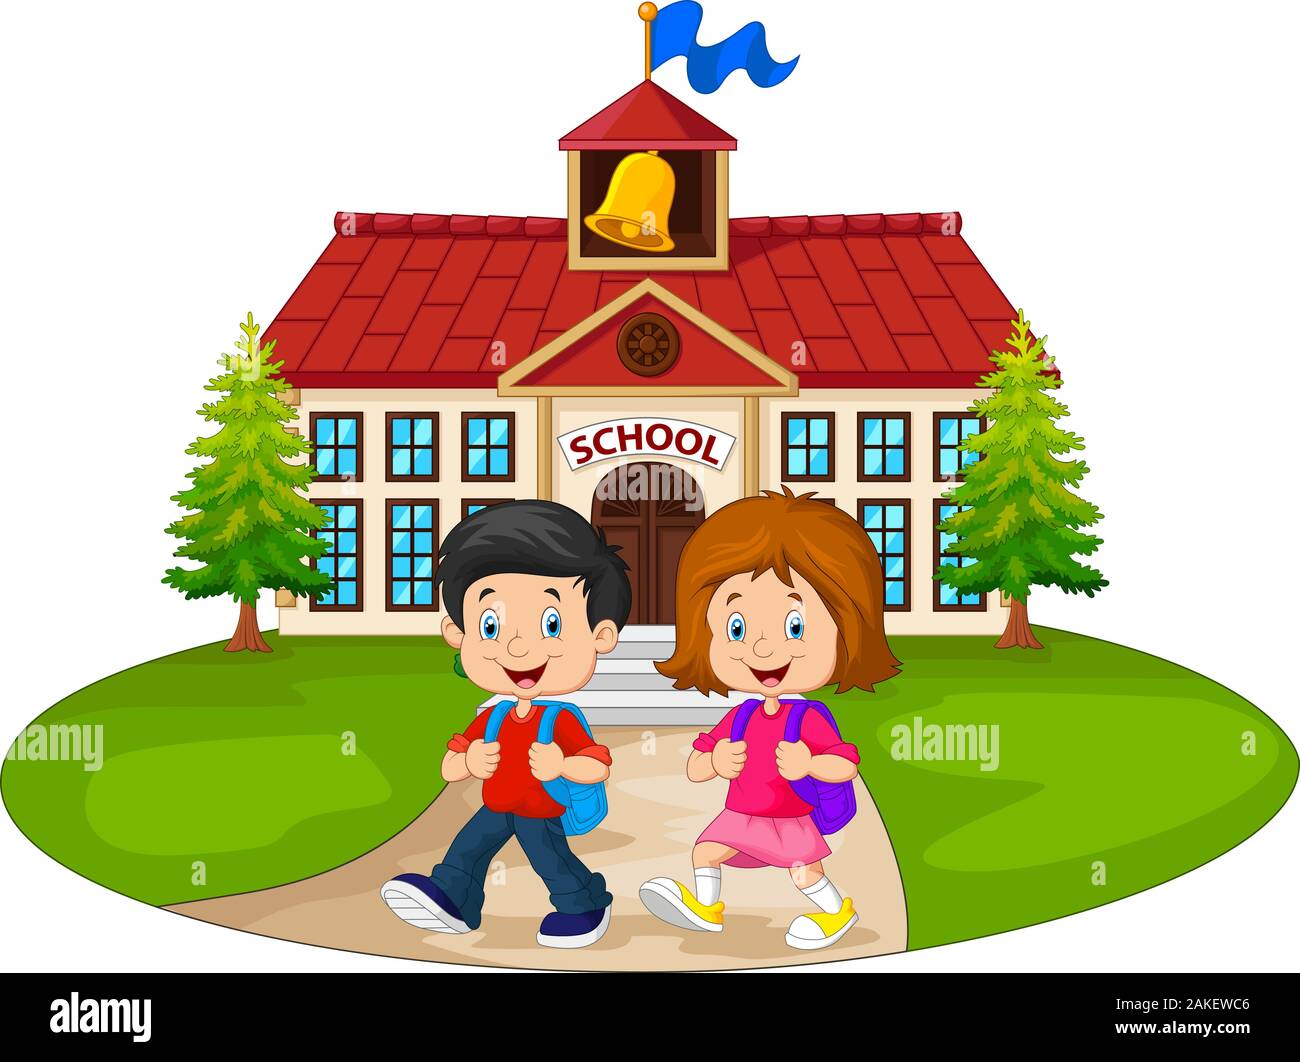 Happy school children in front of school Stock Vector Image & Art - Alamy